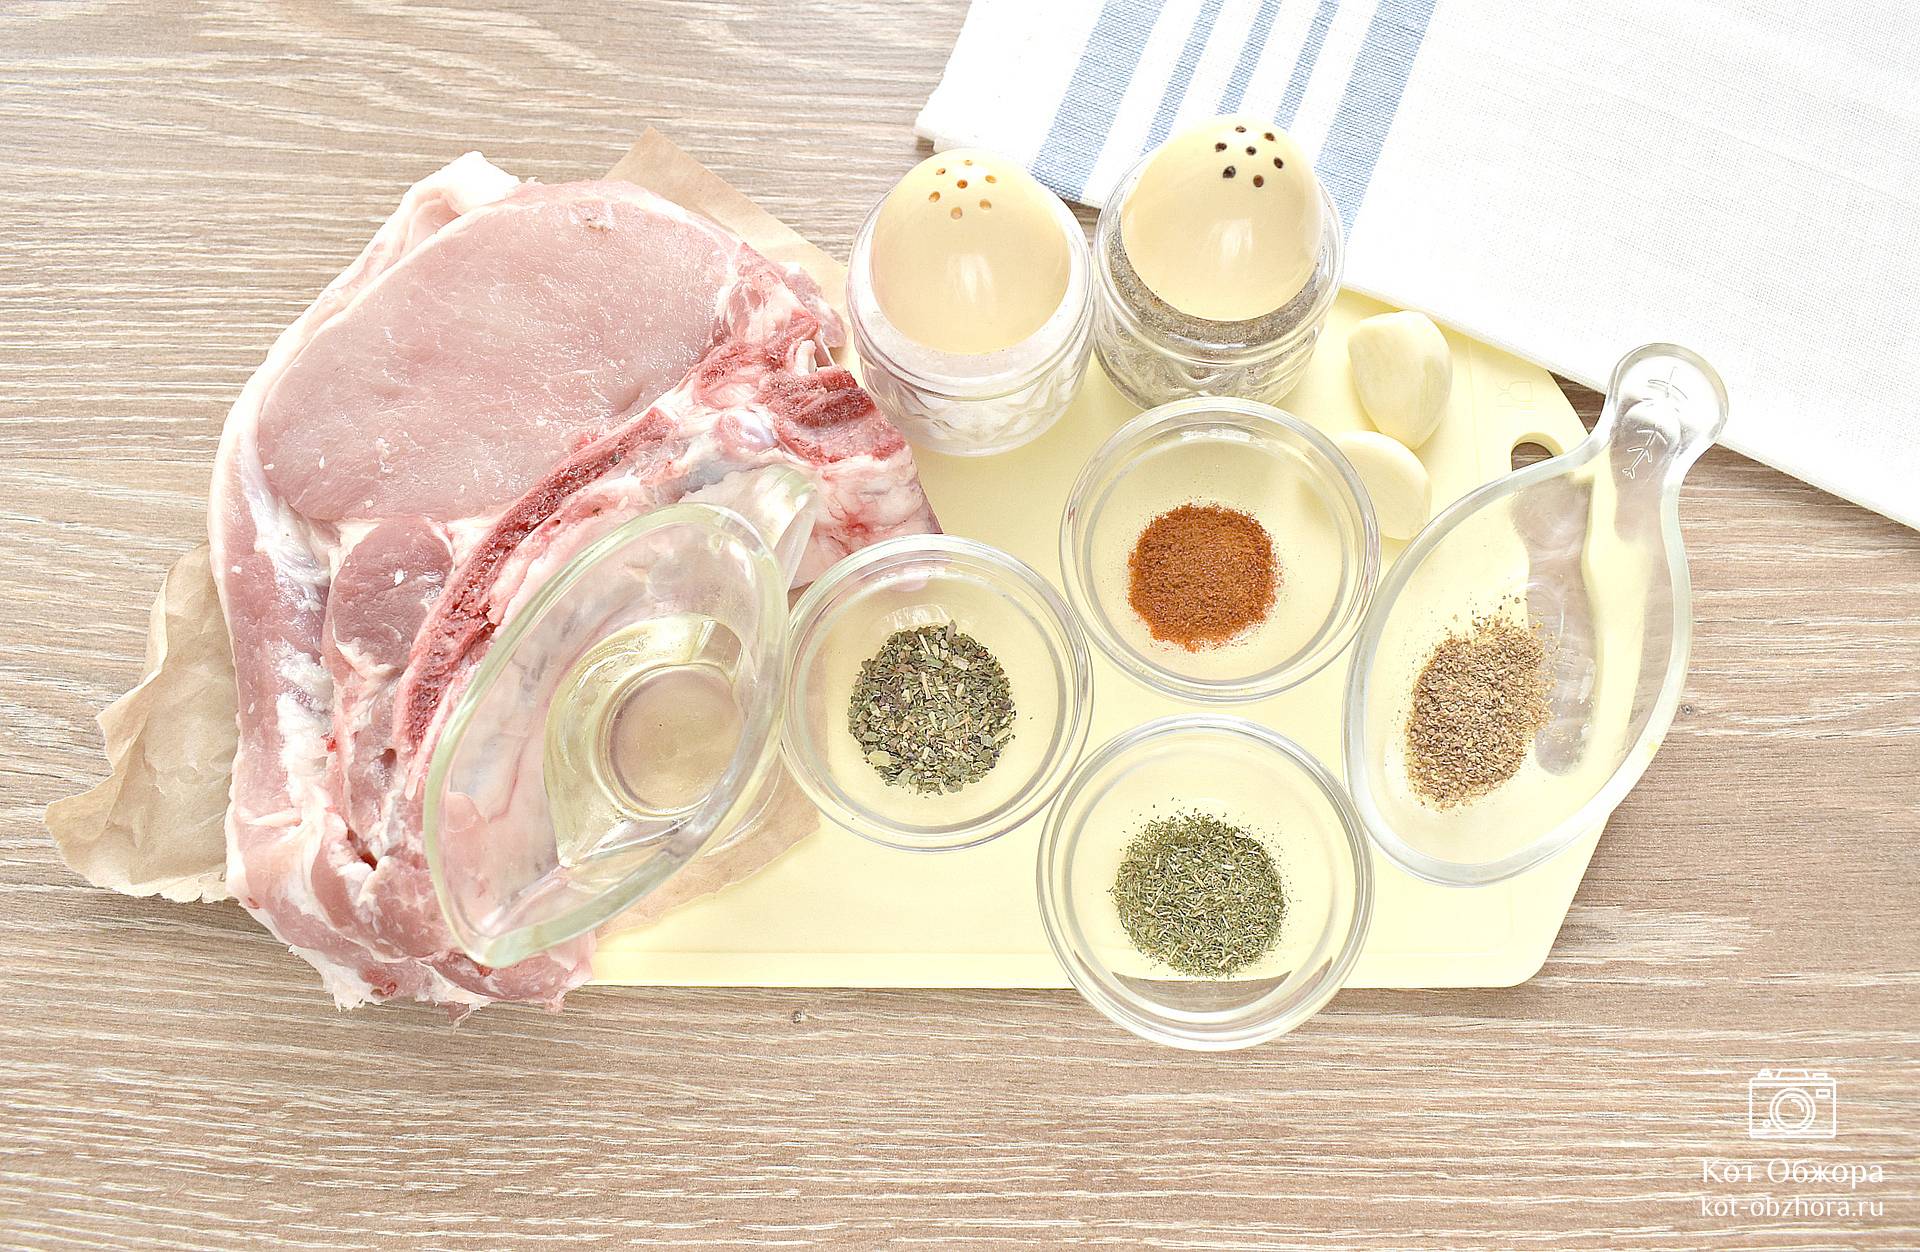 Стейк из свинины на кости в мультиварке — пошаговый рецепт с фото